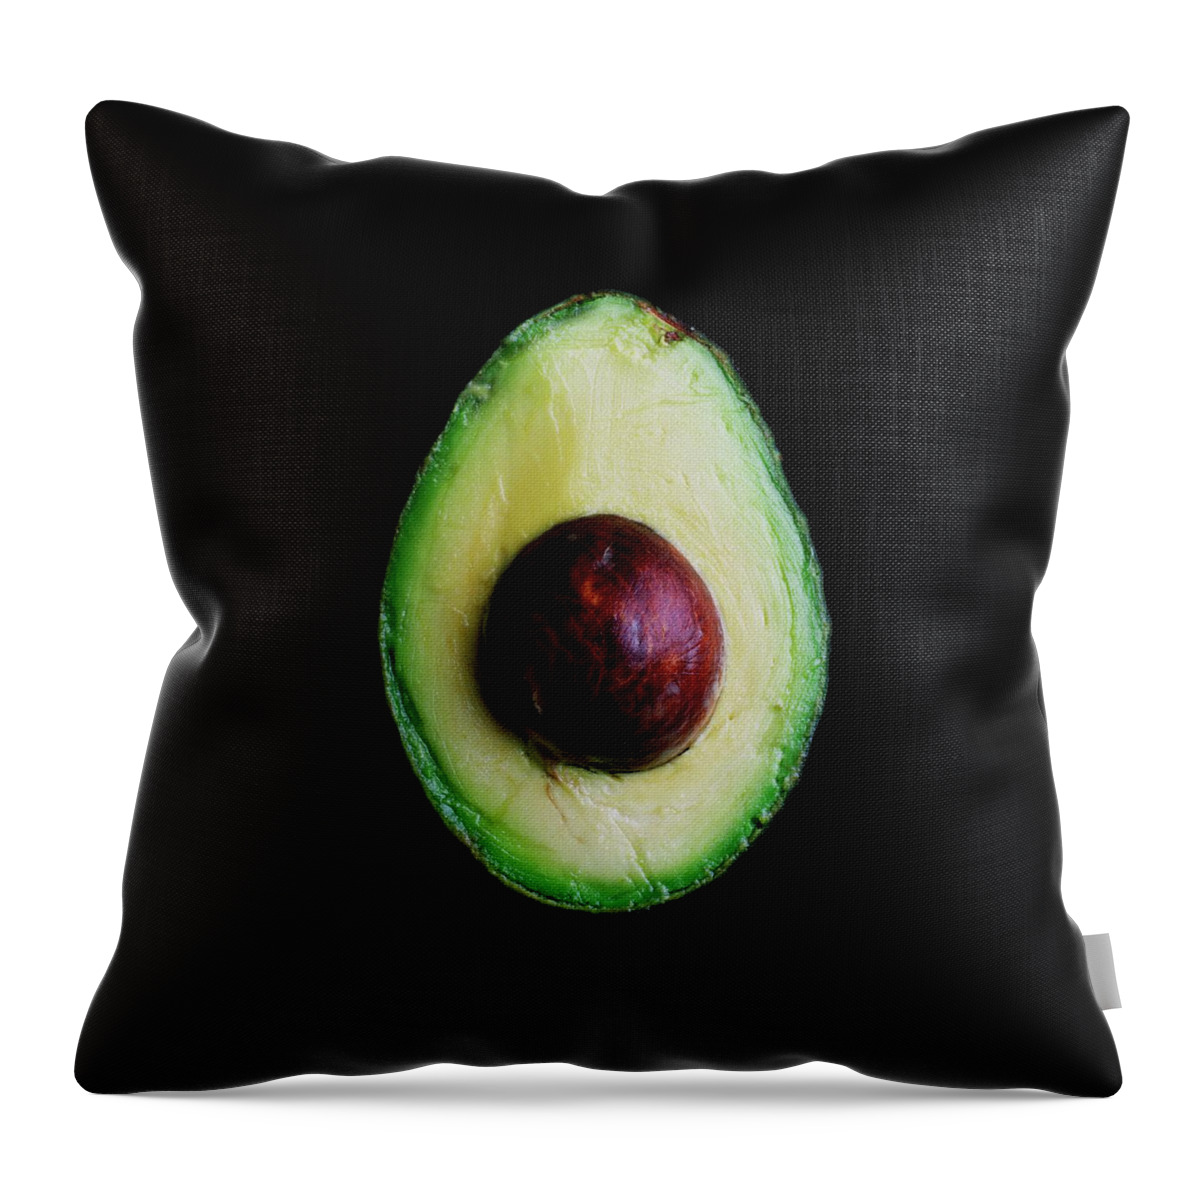 An Avocado Throw Pillow